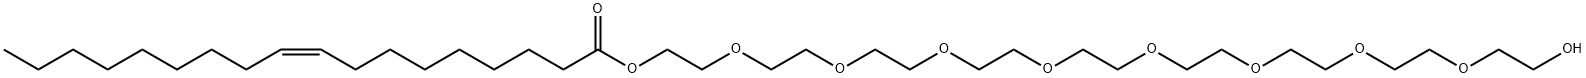 2-[2-[2-[2-[2-[2-[2-[2-(2-hydroxyethoxy)ethoxy]ethoxy]ethoxy]ethoxy]et hoxy]ethoxy]ethoxy]ethyl (Z)-octadec-9-enoate Structure